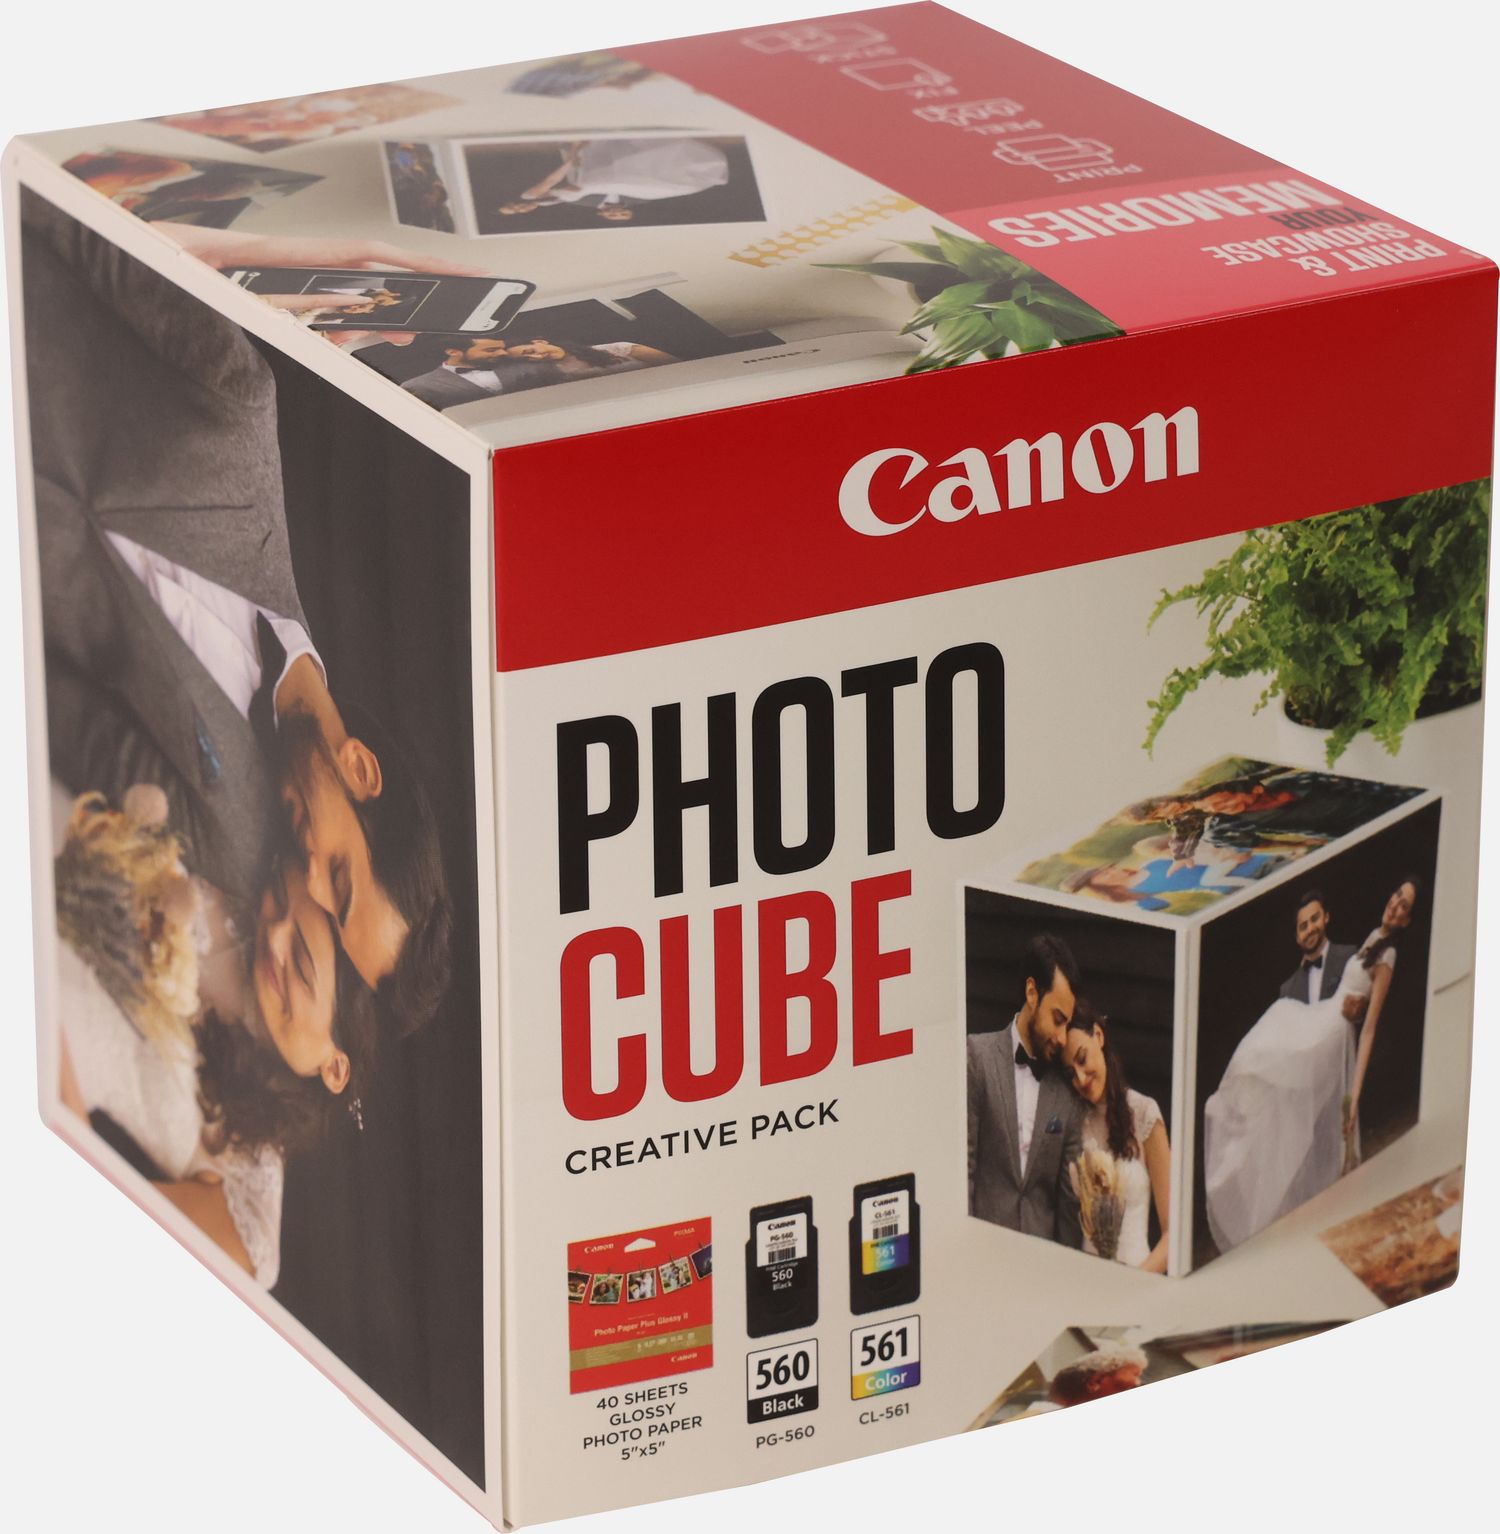 Image of Canon Photo Cube con cartucce Inkjet PG-560 + CL-561 e carta fotografica lucida Plus Glossy II PP-201 5x5" (40 fogli) - Confezione multipla, Rosa